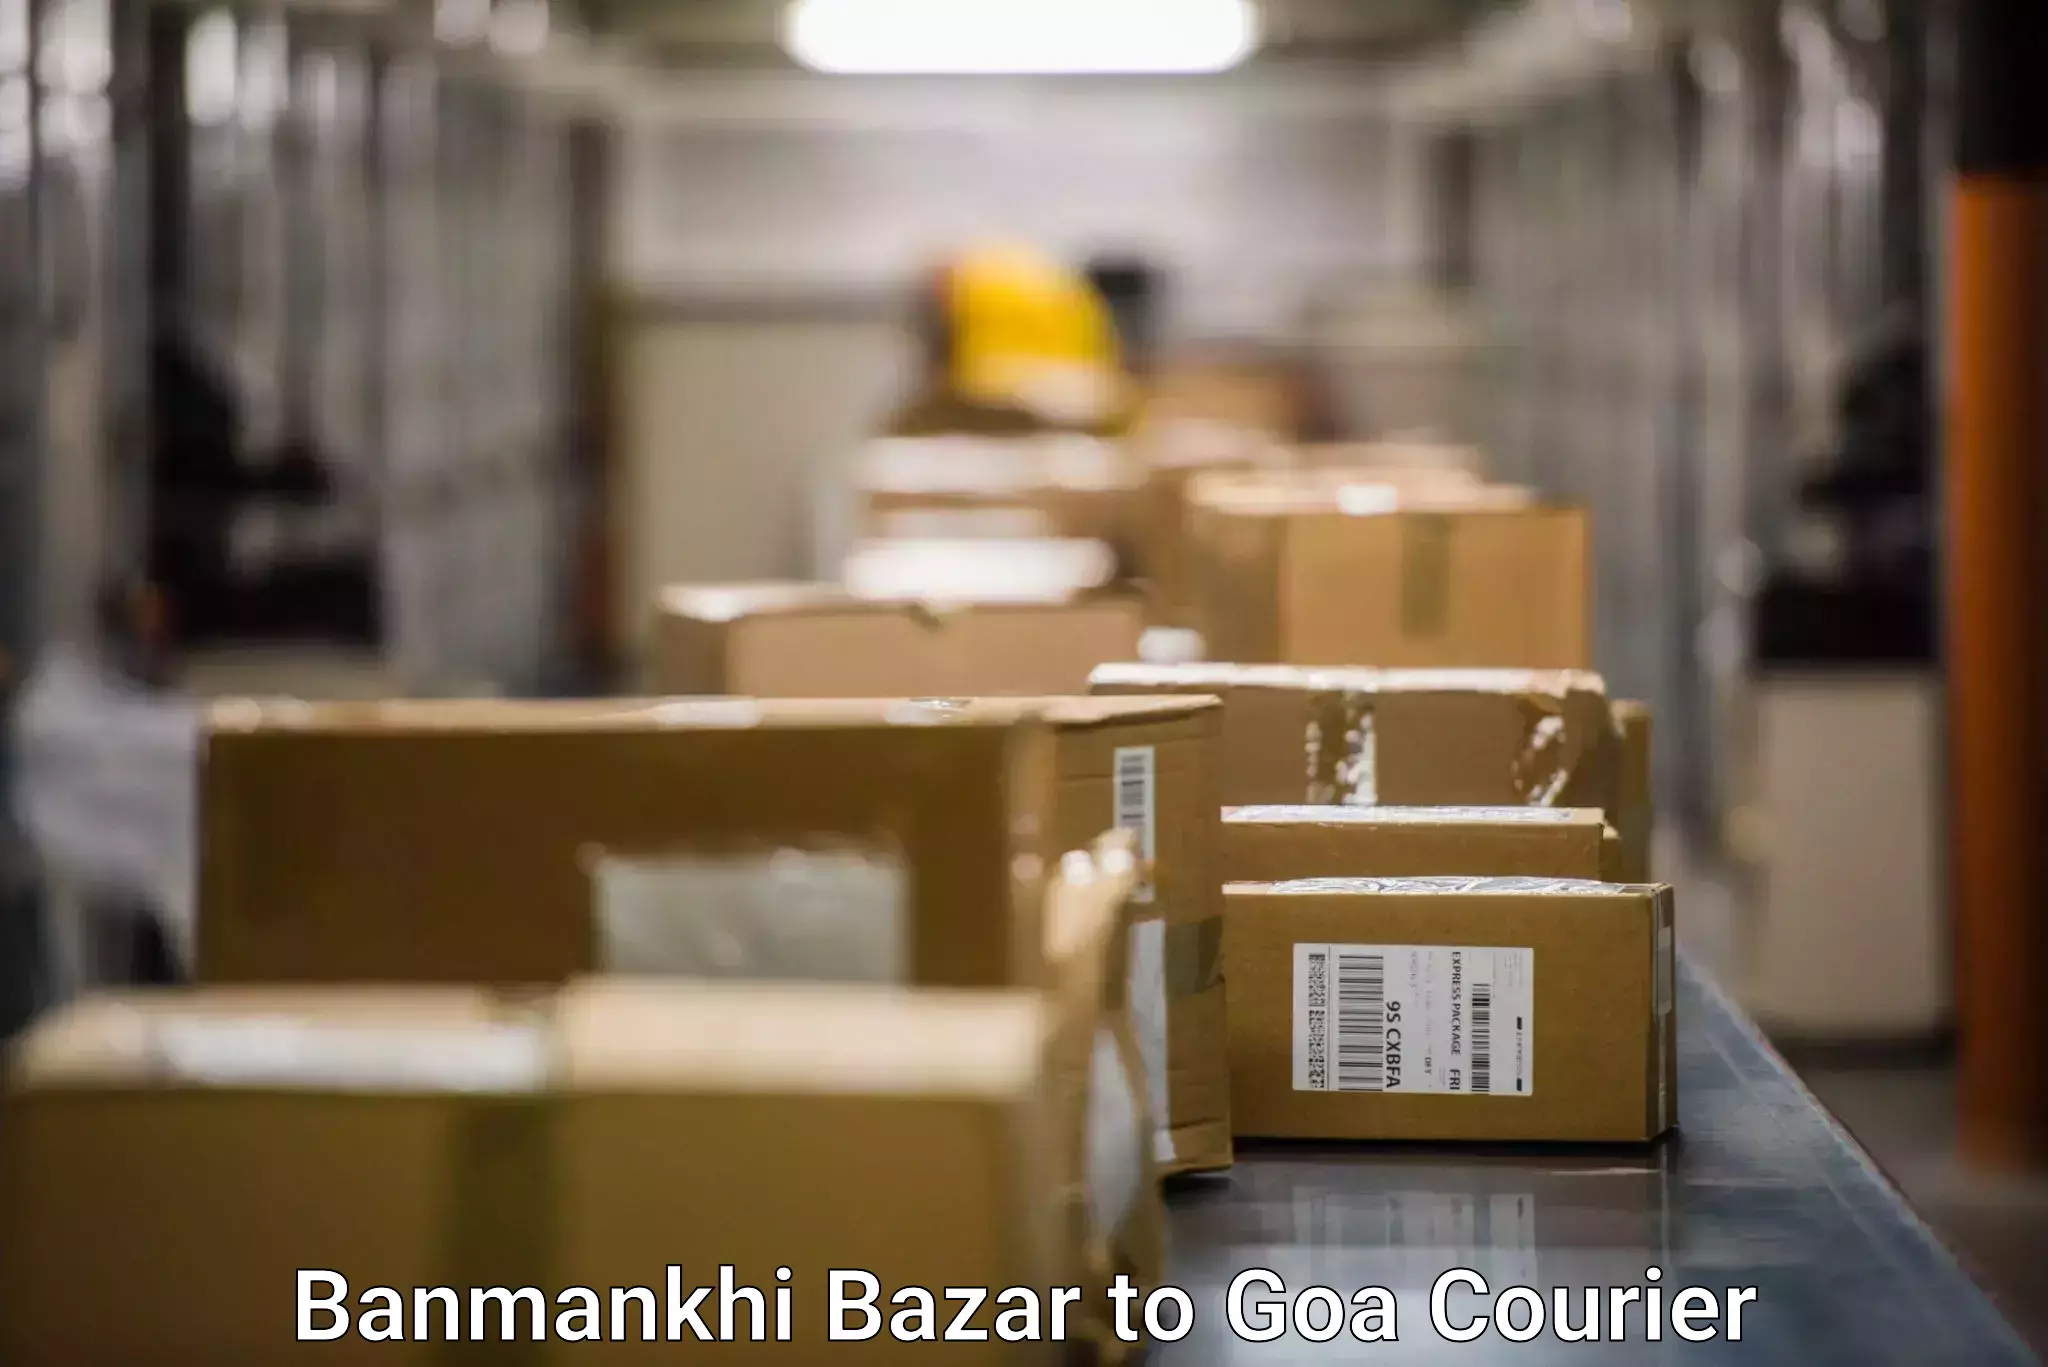 Trackable shipping service Banmankhi Bazar to Goa